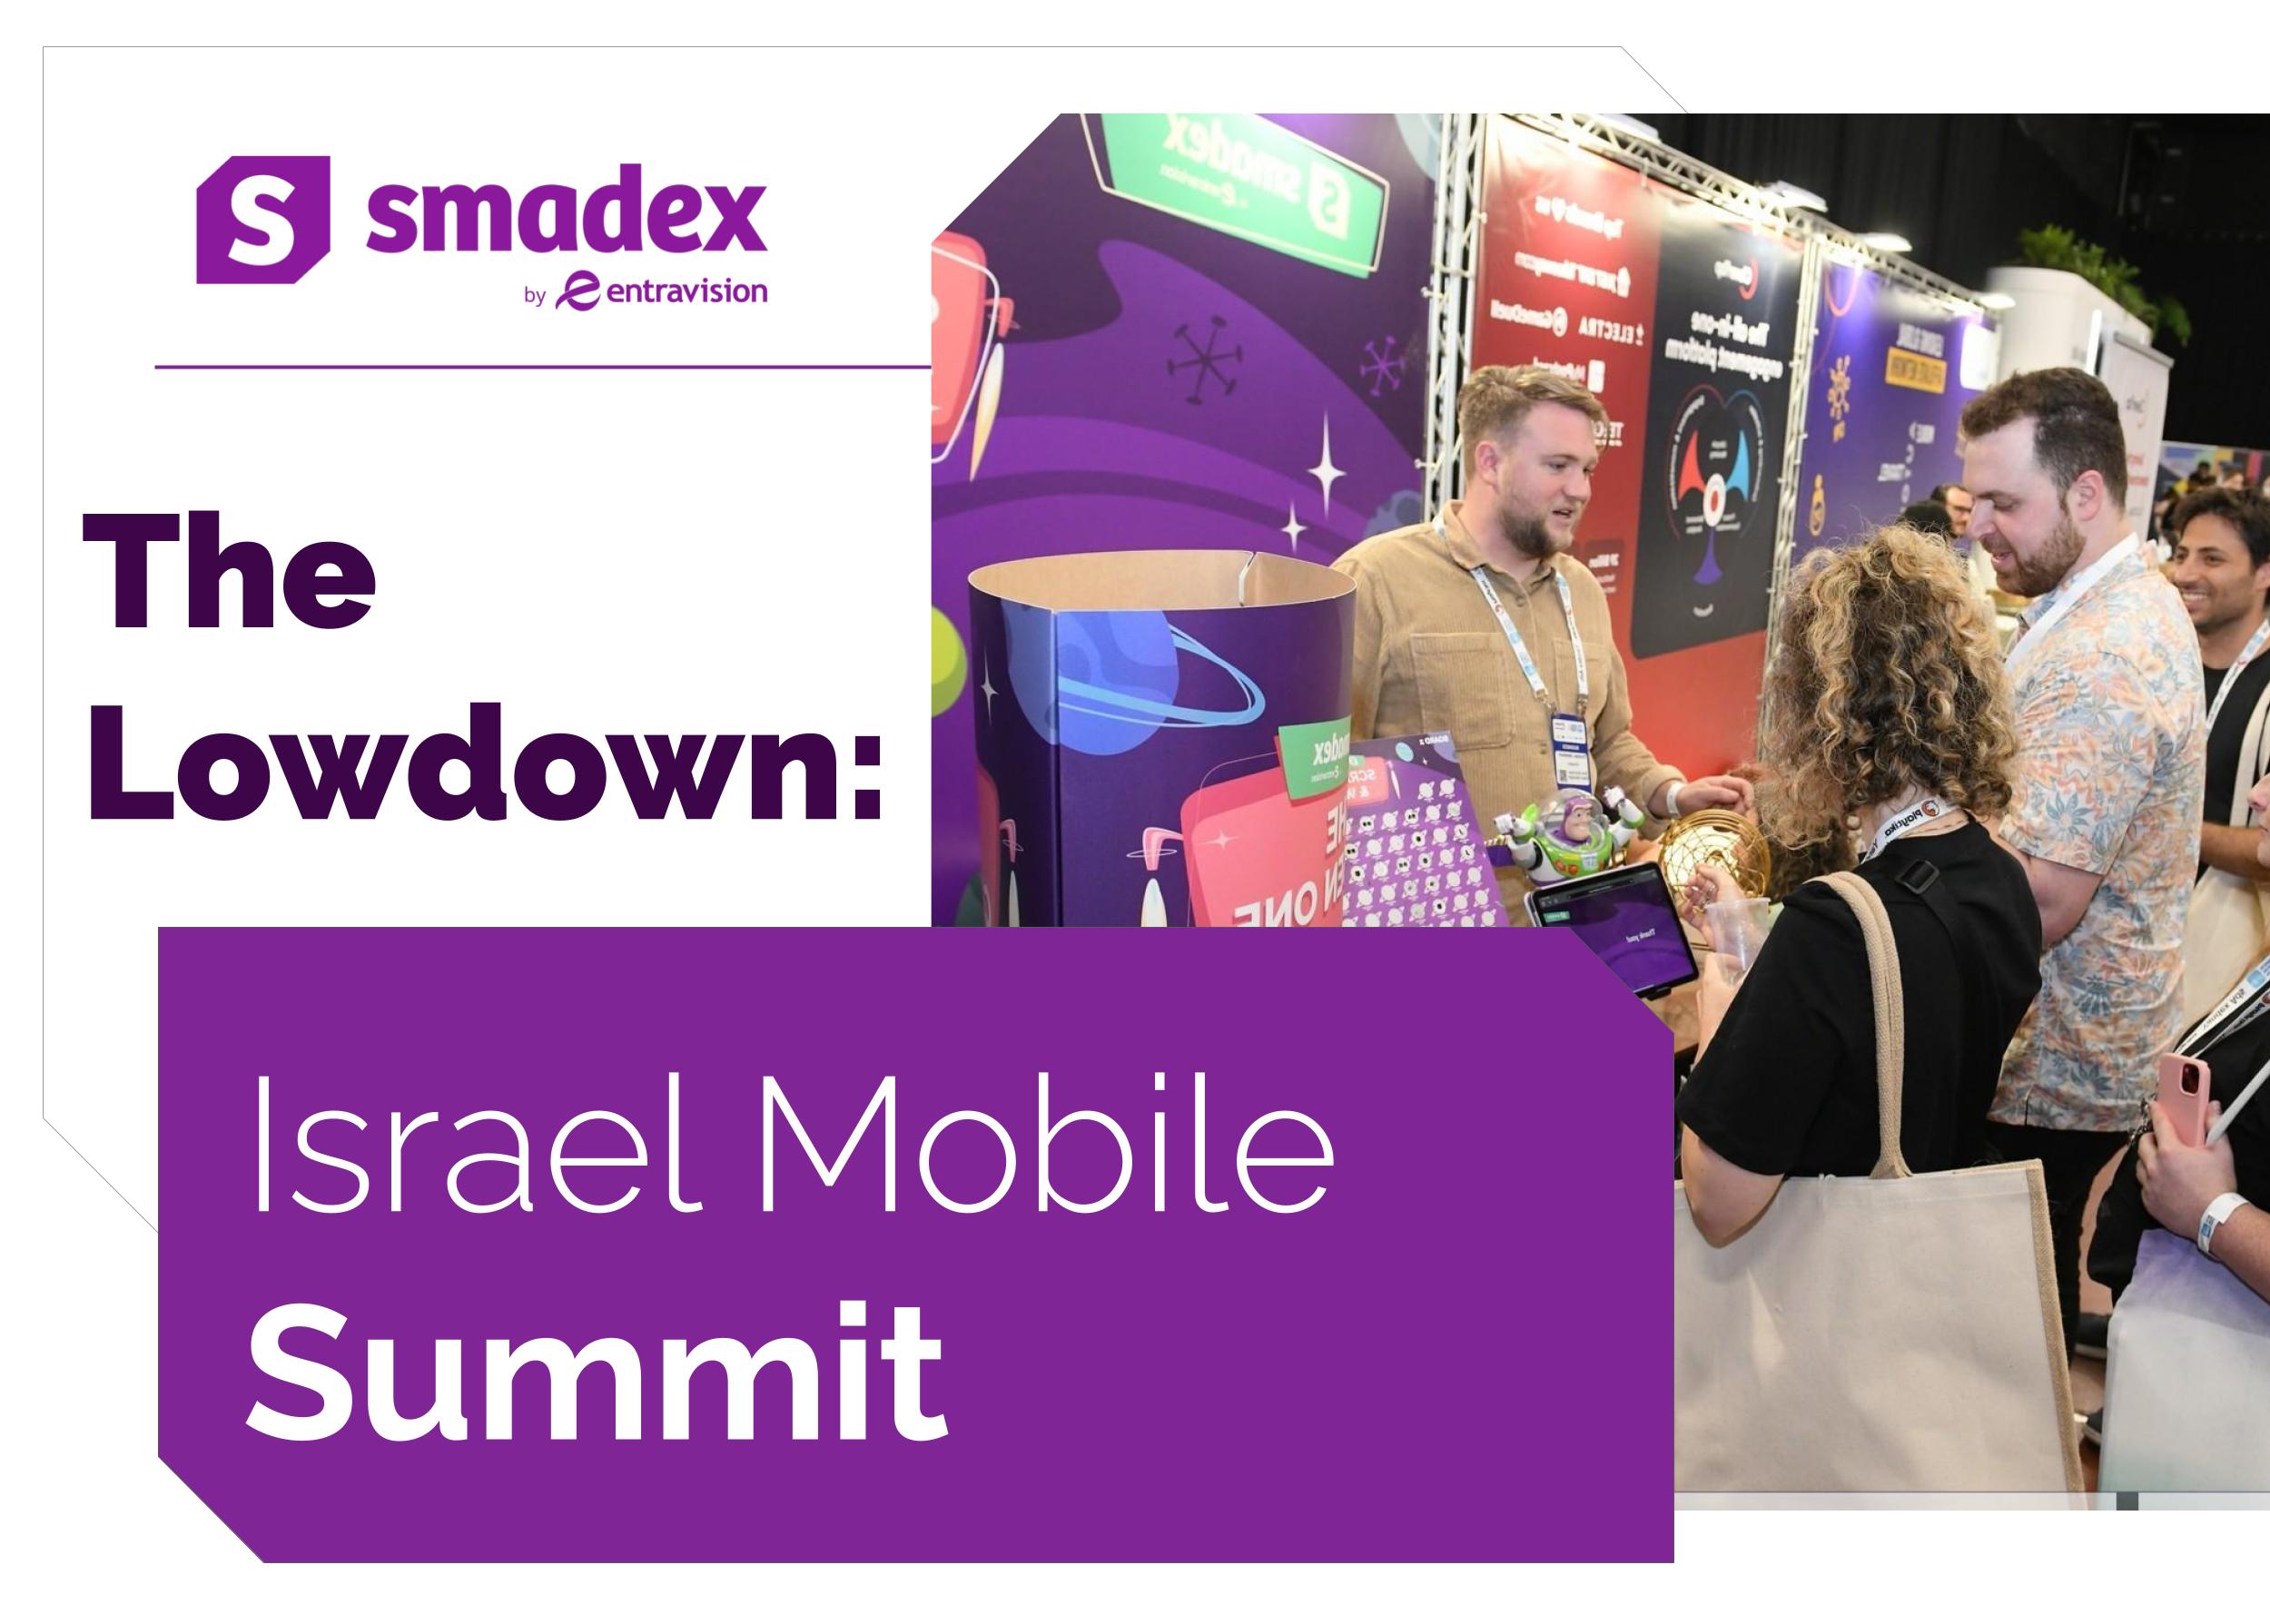 israel-mobile-summit-smadex